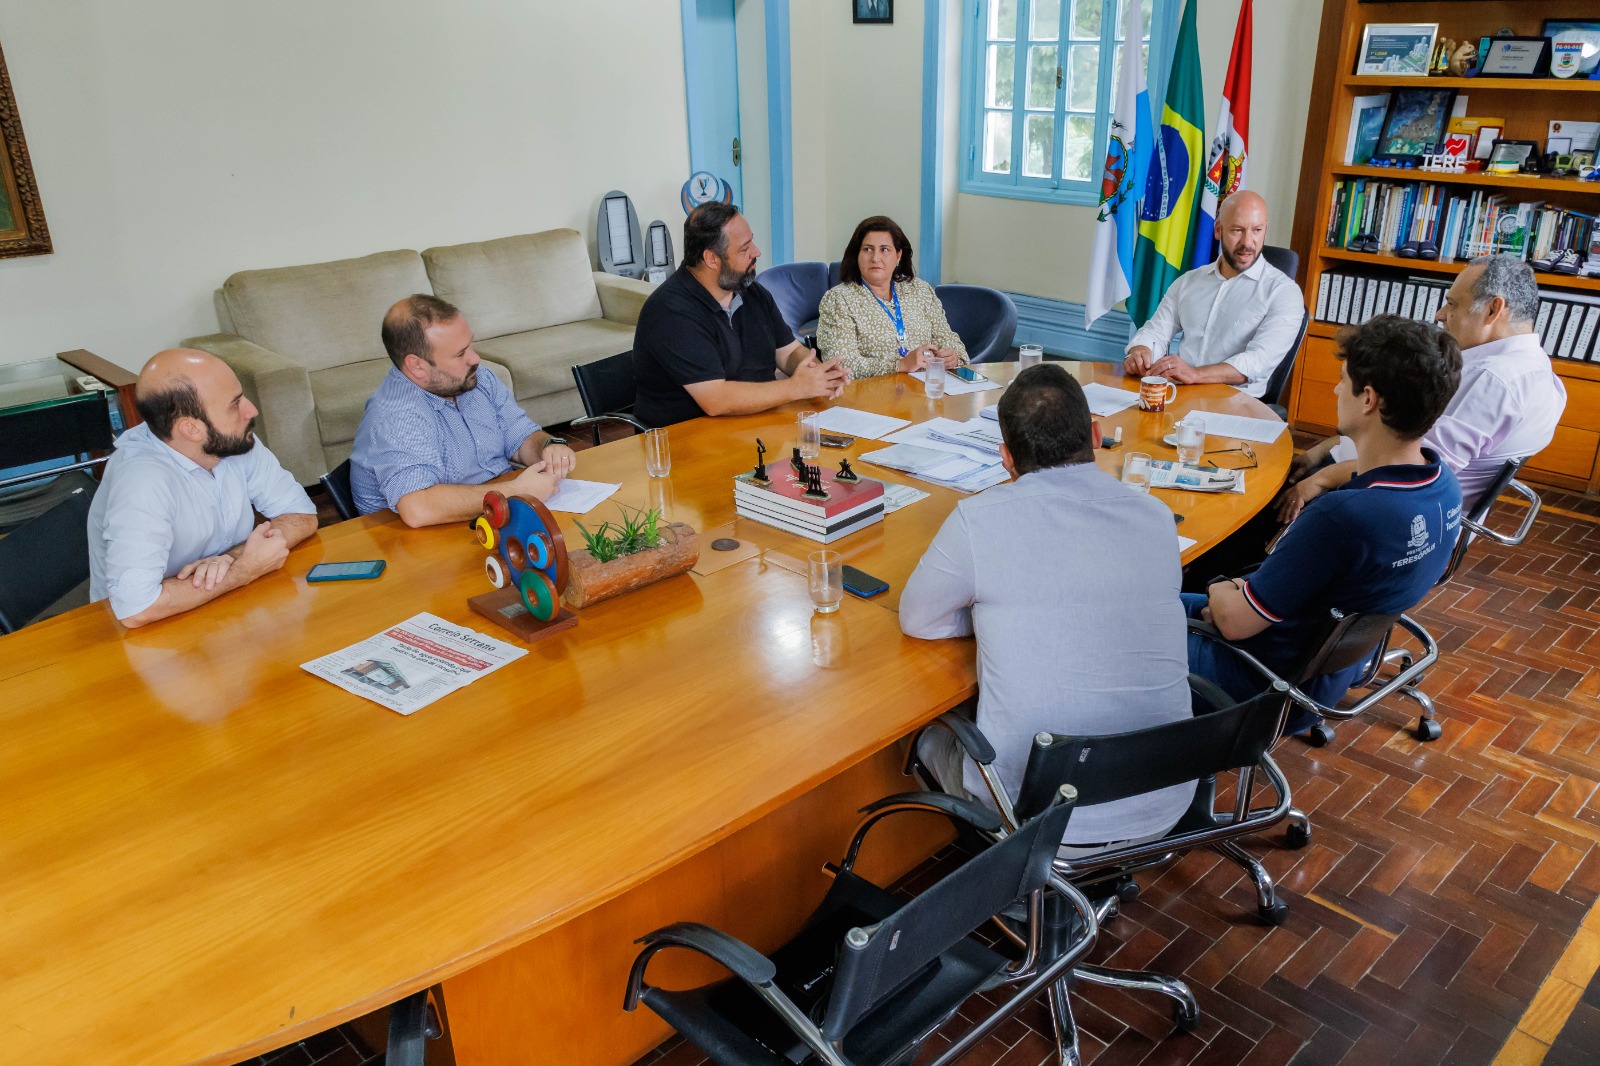 Prêmio Prefeitura Empreendedora: Teresópolis recebe visita técnica do Consultor de Políticas Públicas do Sebrae